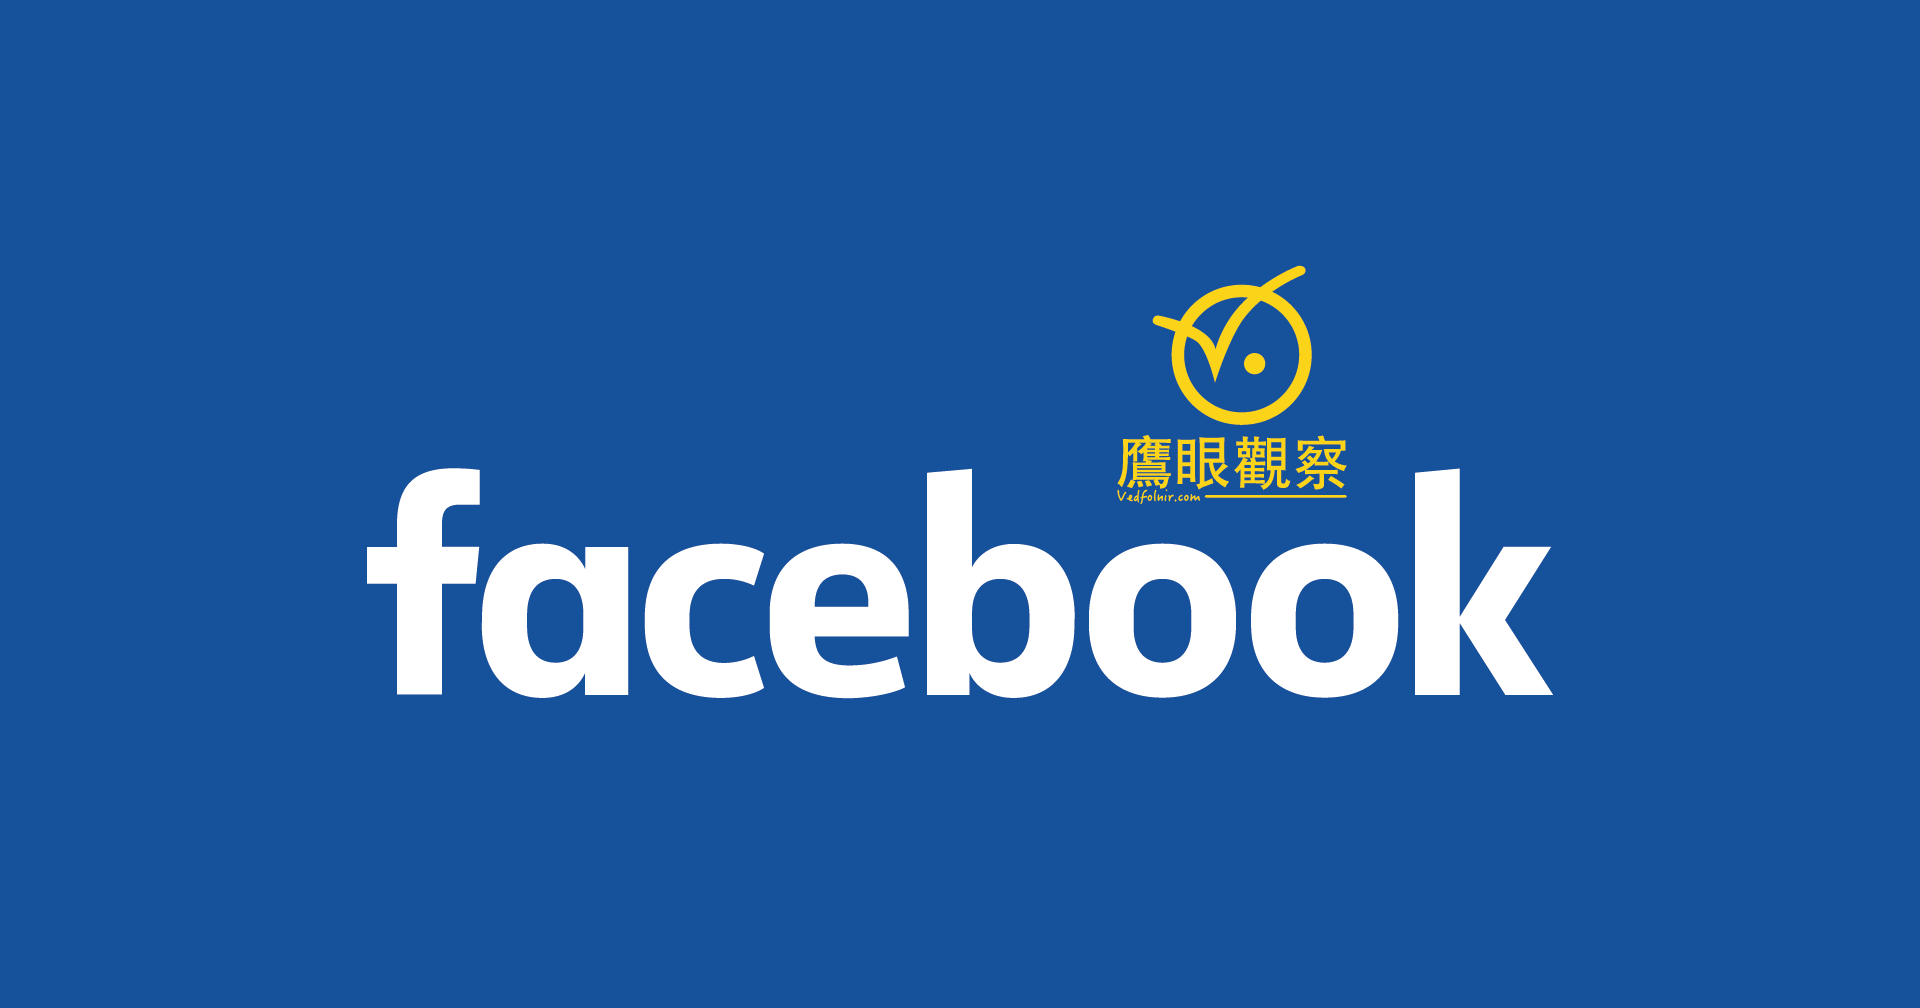 Facebook 臉書貼文文字放大35、49字與18、25行應用規則